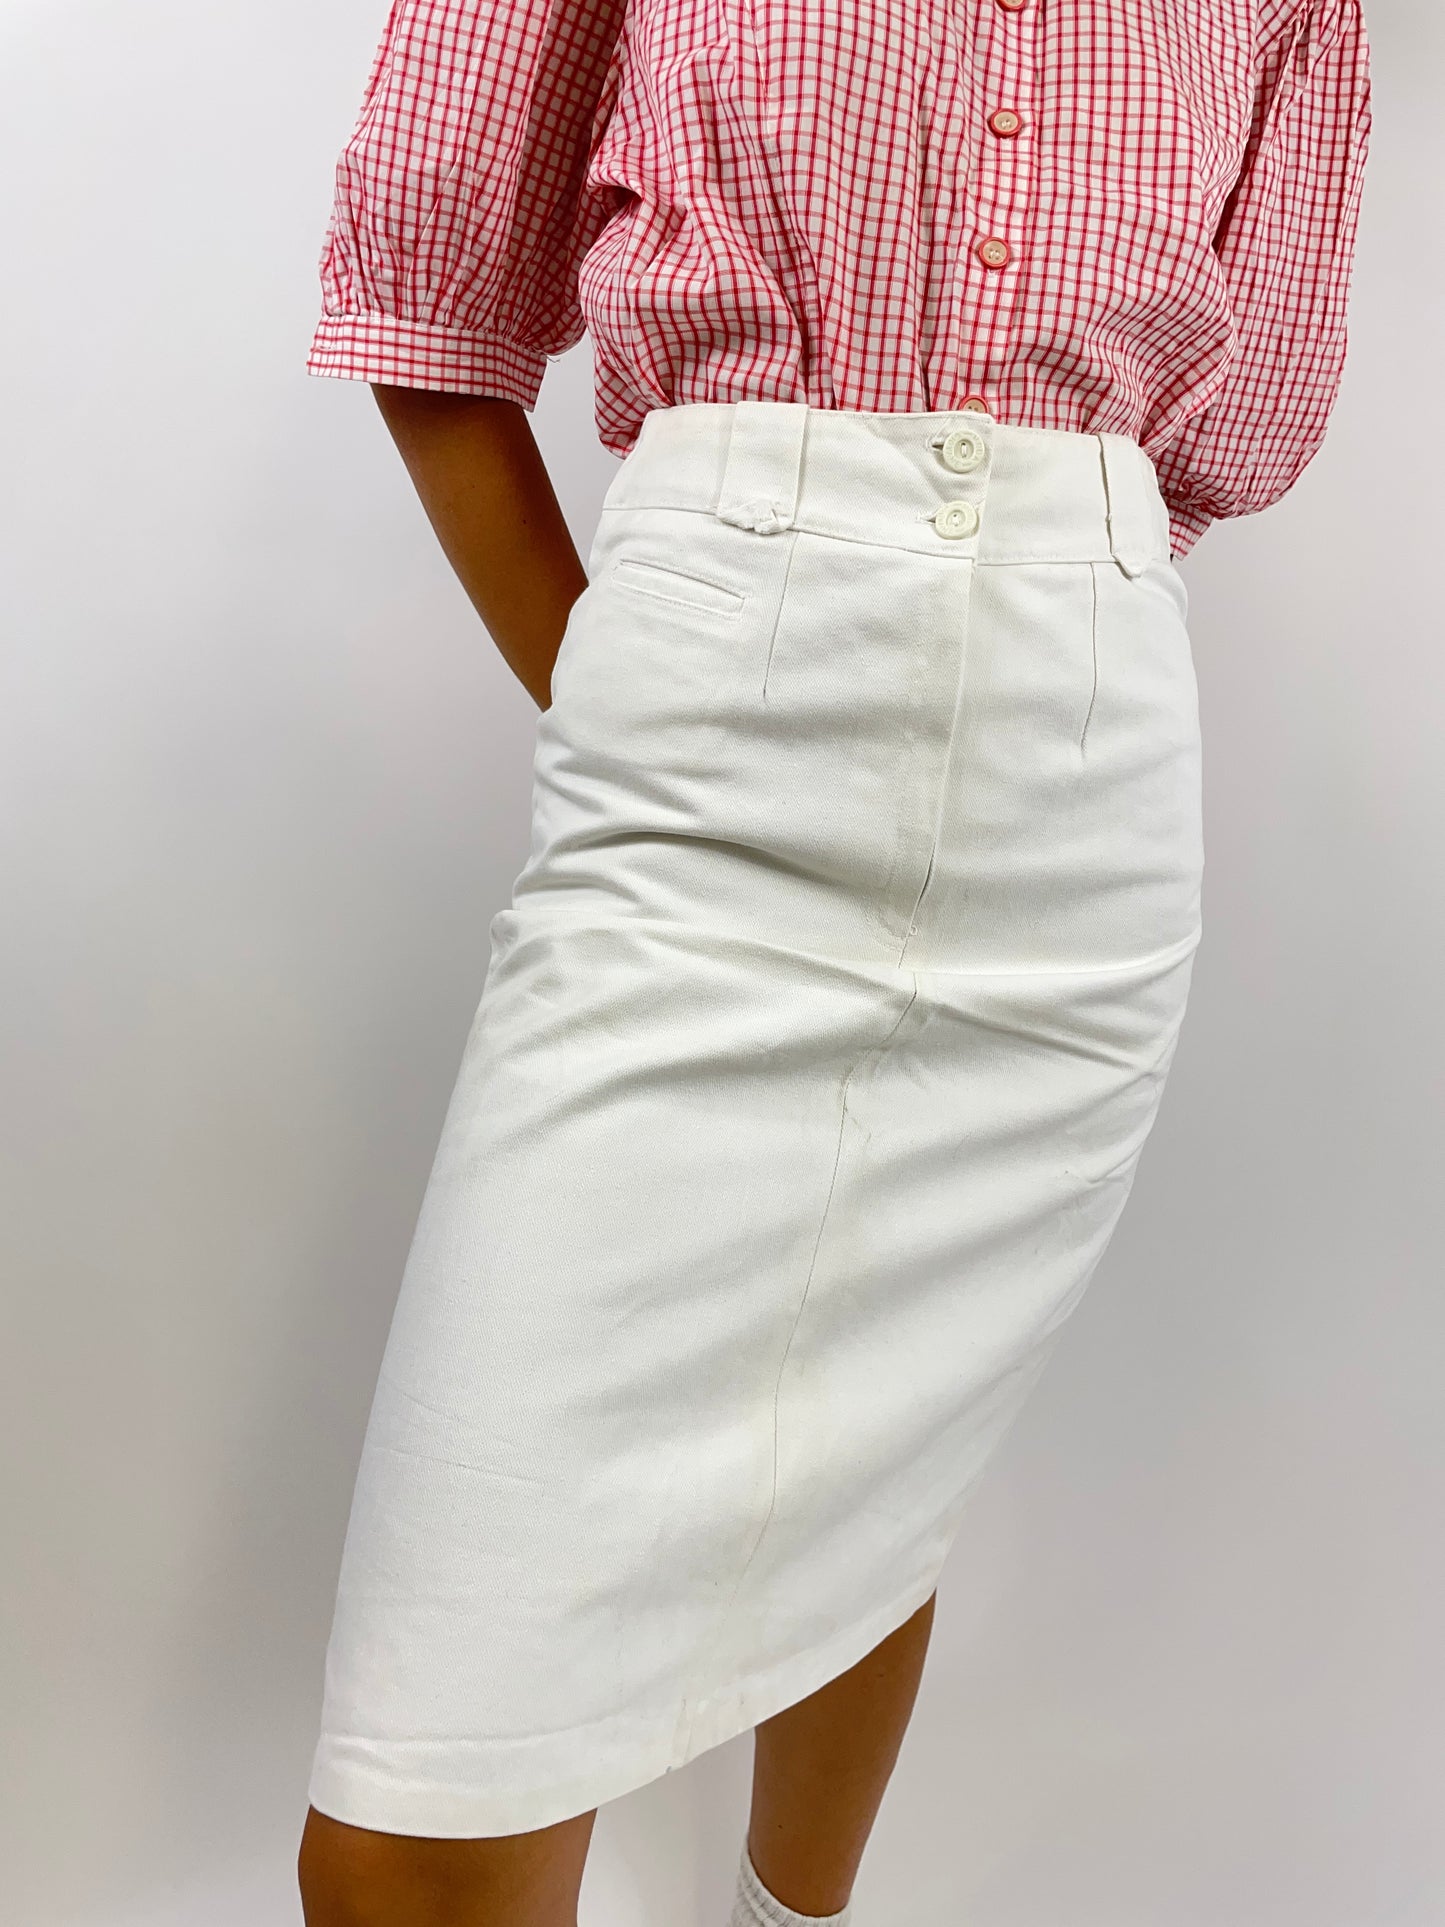 Gatsby Jeans 1980s skirt